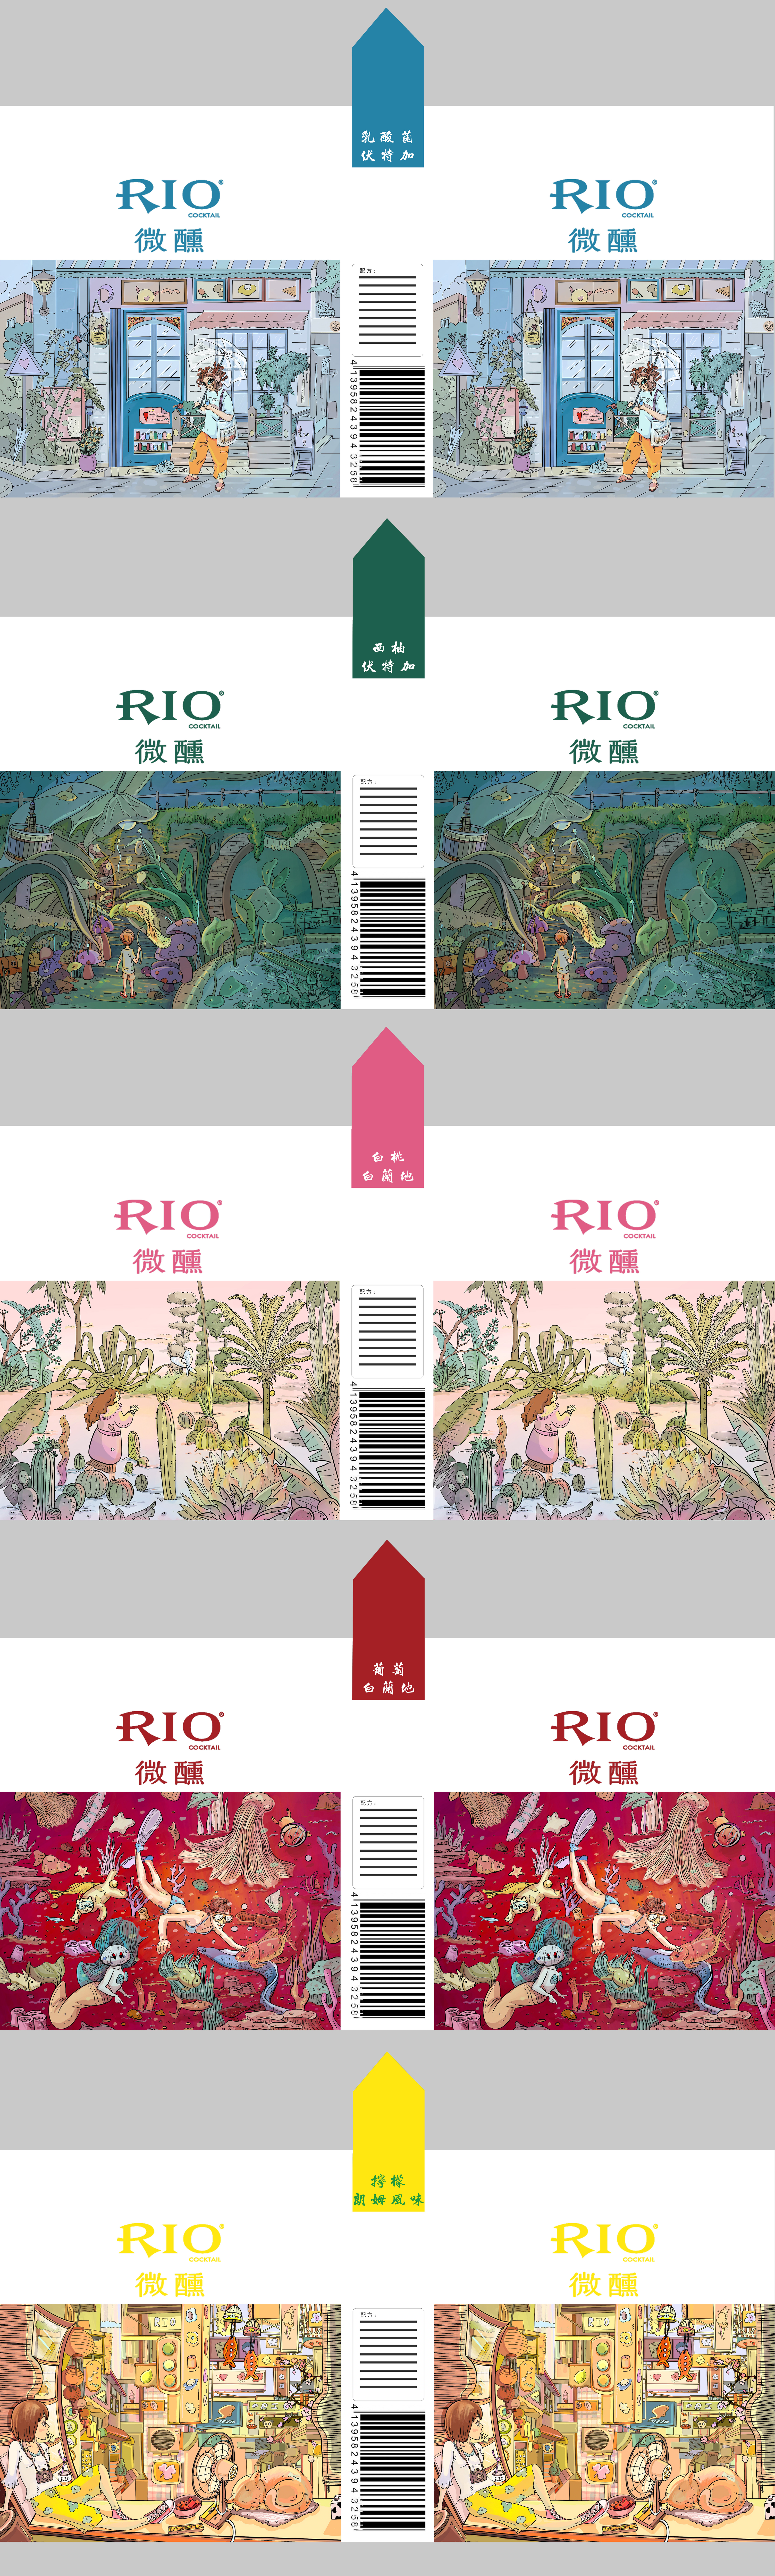 rio鸡尾酒包装设计图片